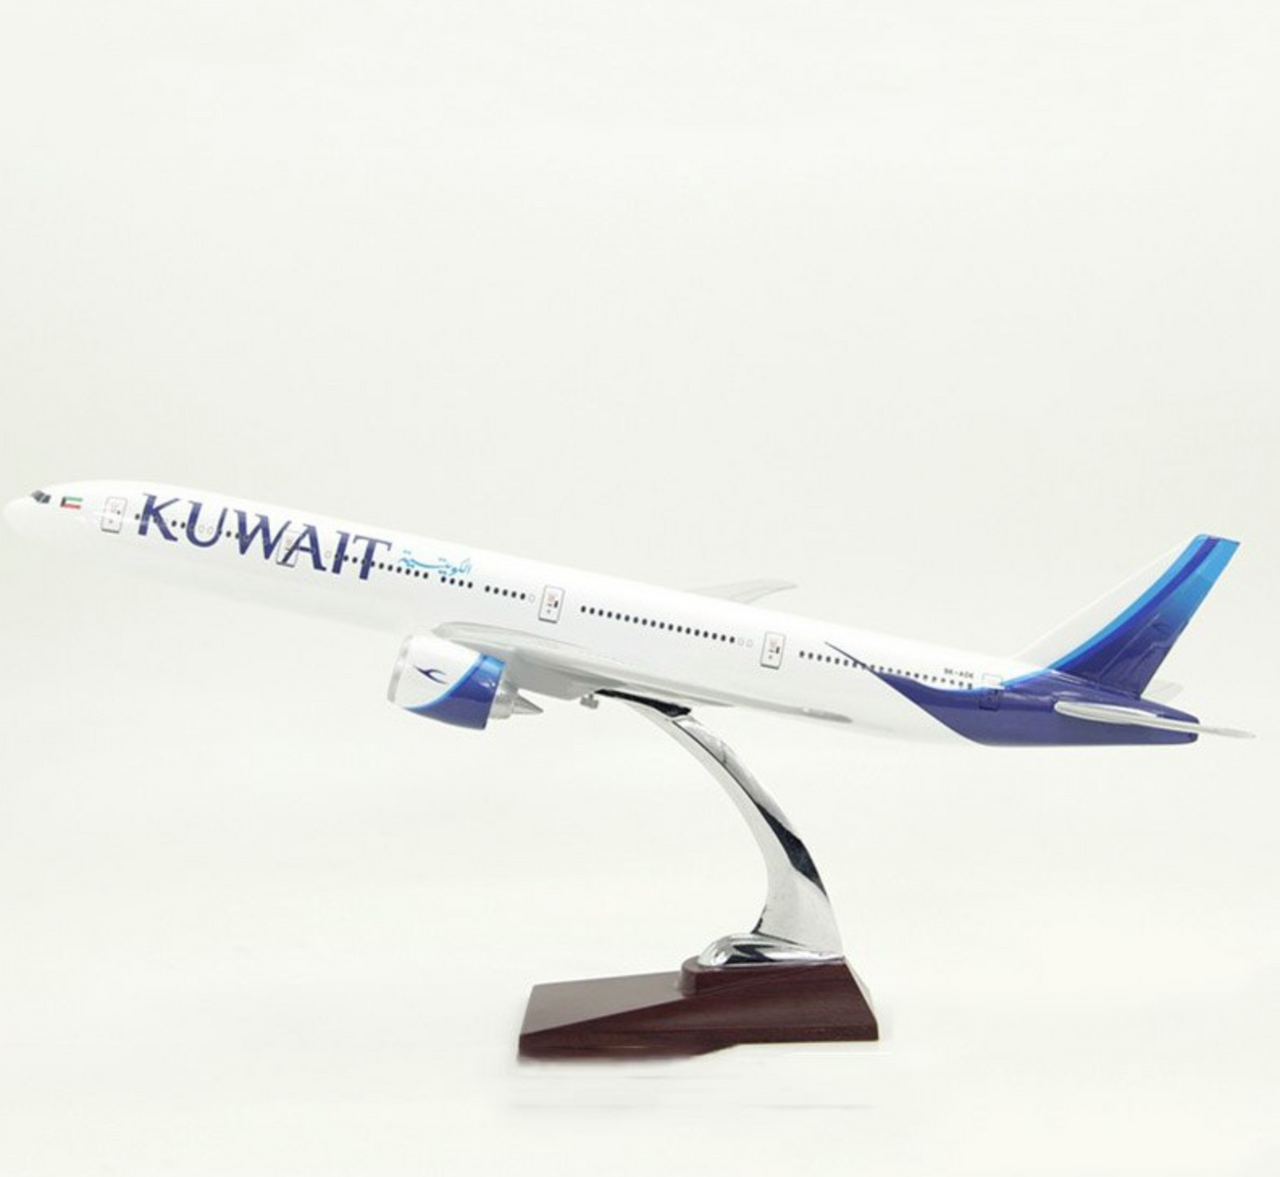 KUWAIT Airways Boeing 777 Airplane Model (Special 47CM)